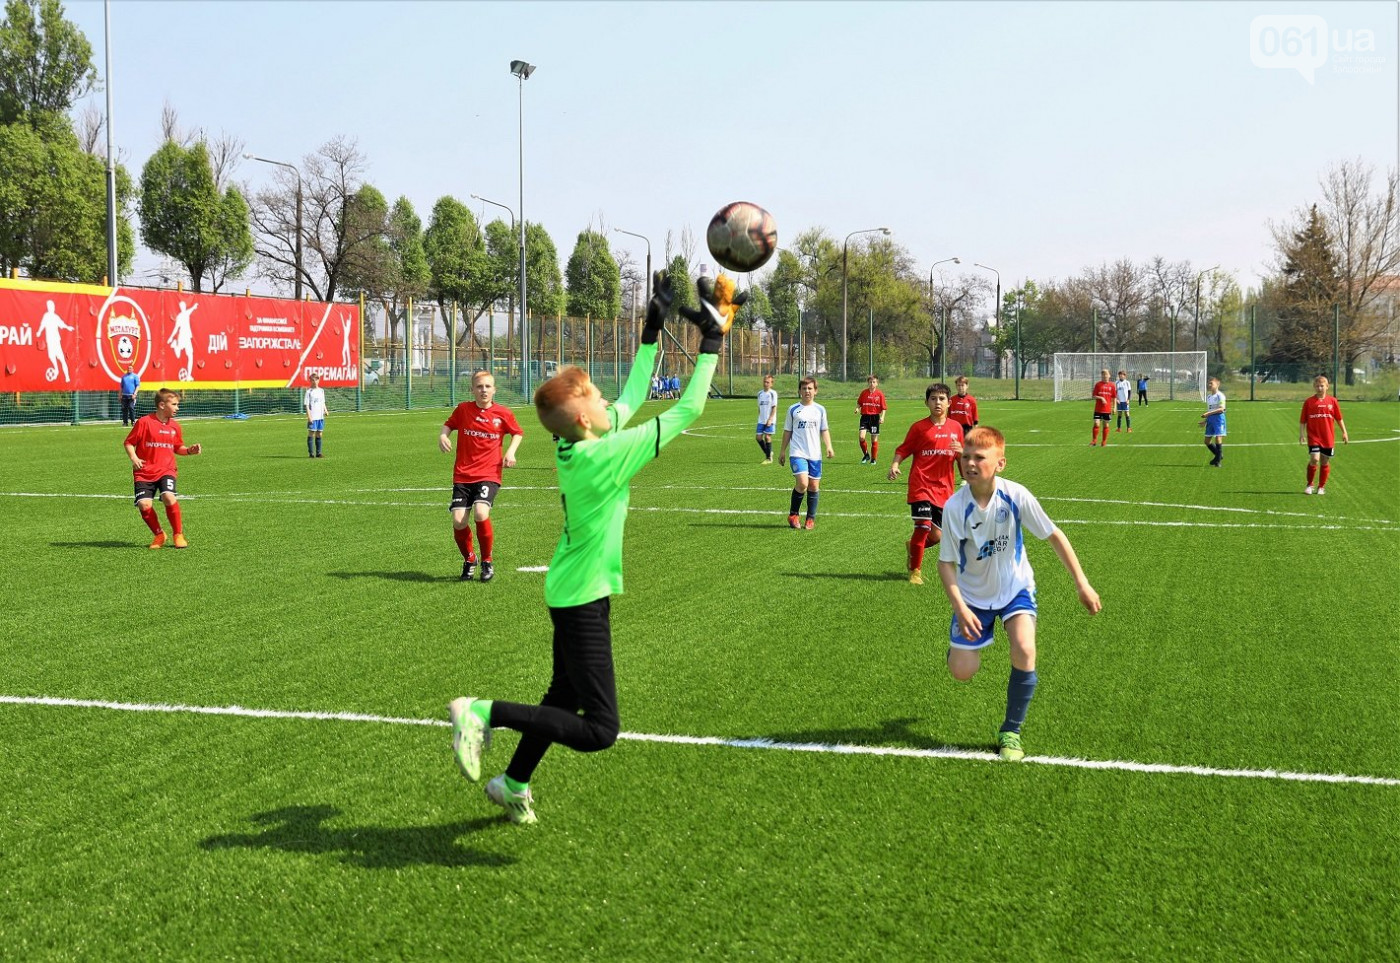 Запорожский горсовет планирует за 15 миллионов выкупить имущество спортшколы “Металлург”